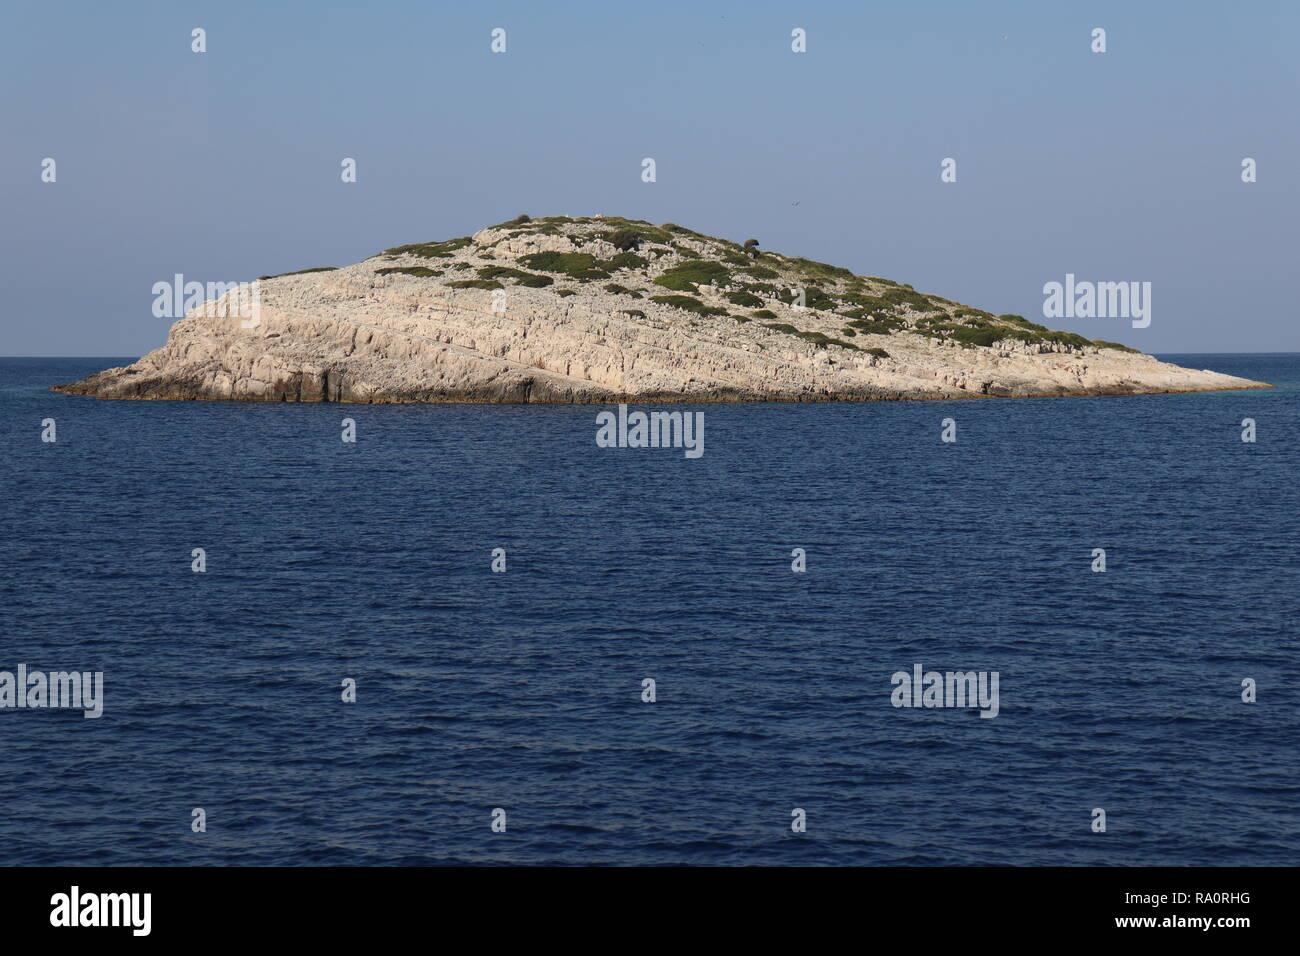 islet in Telascica Nature Park, Dugi Otok, Adriatic sea, Croatia Stock Photo